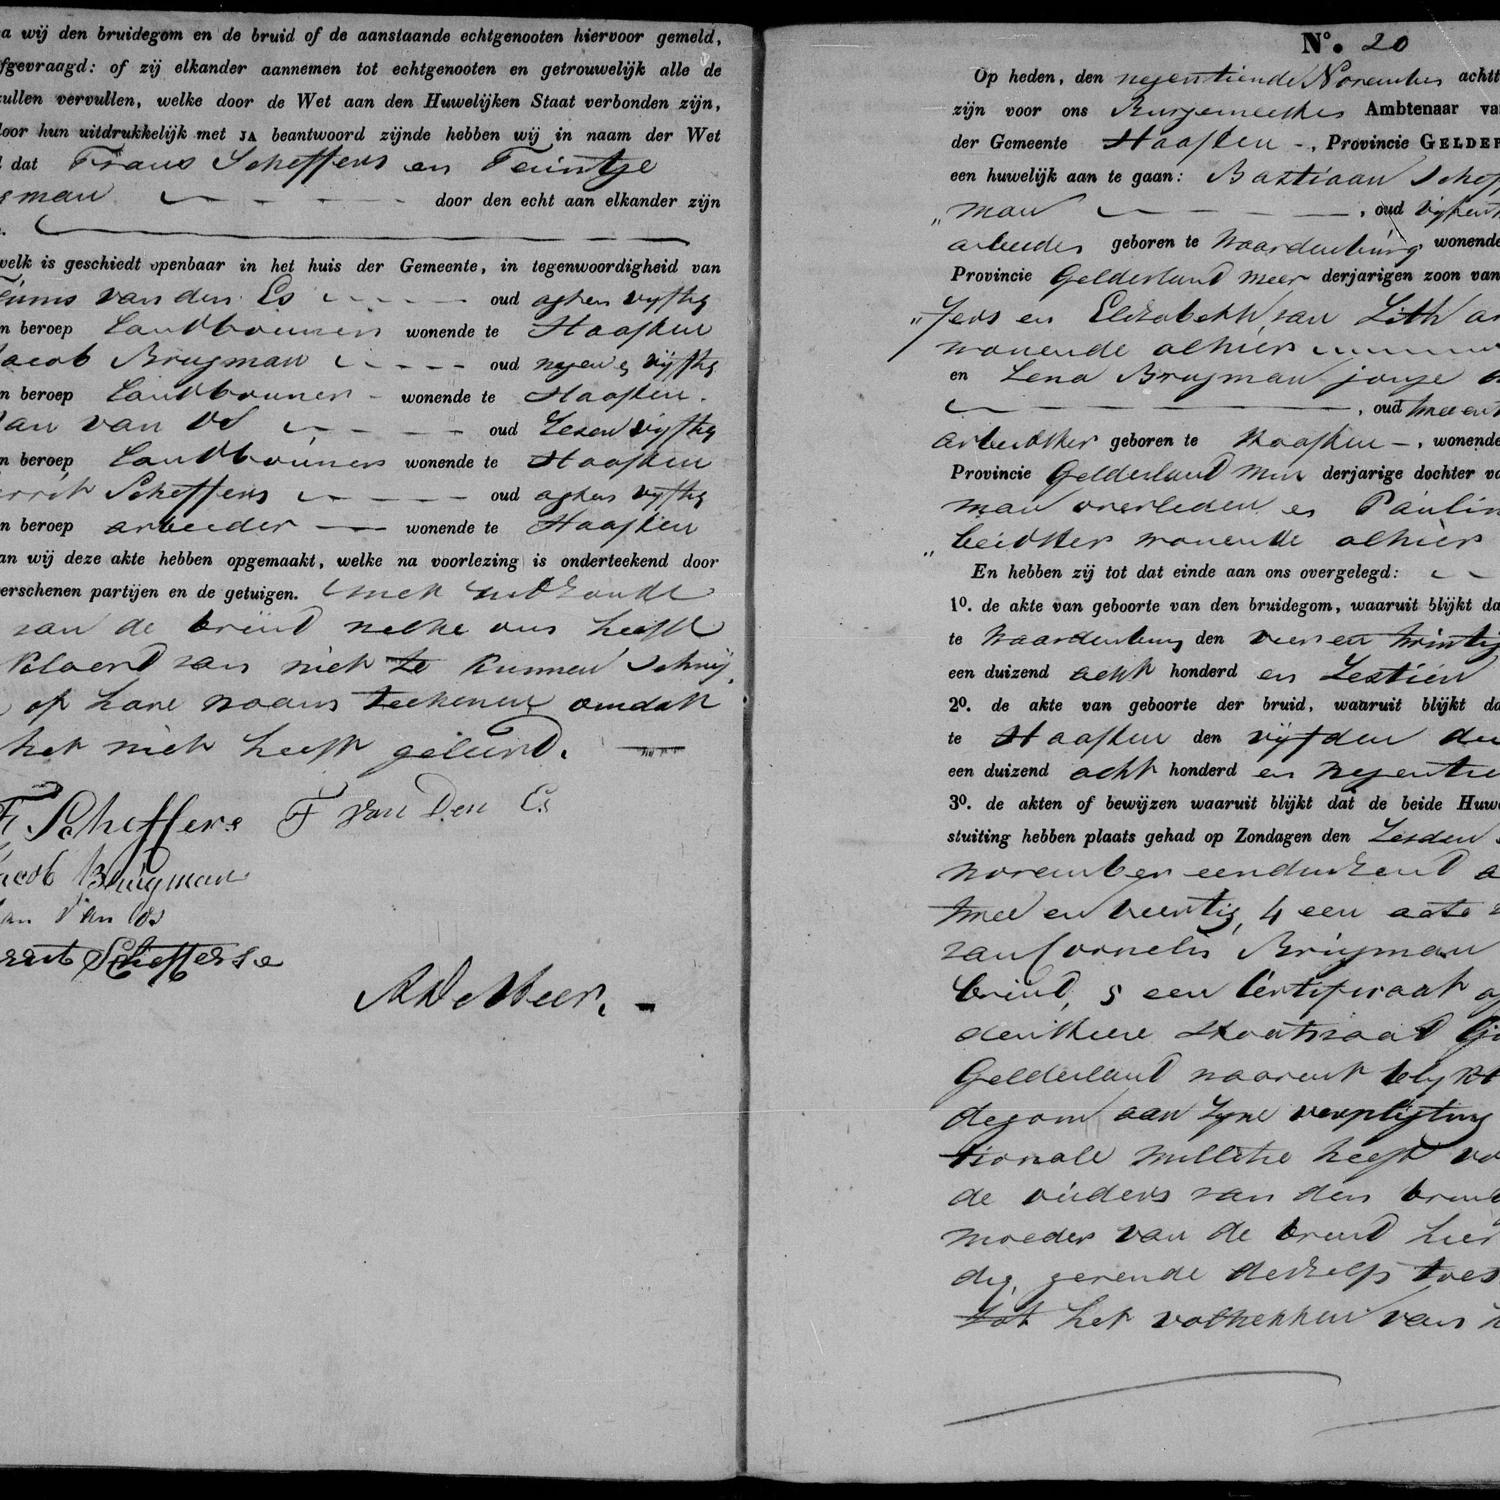 Civil registry of marriages, Haaften, 1842, records 19-20